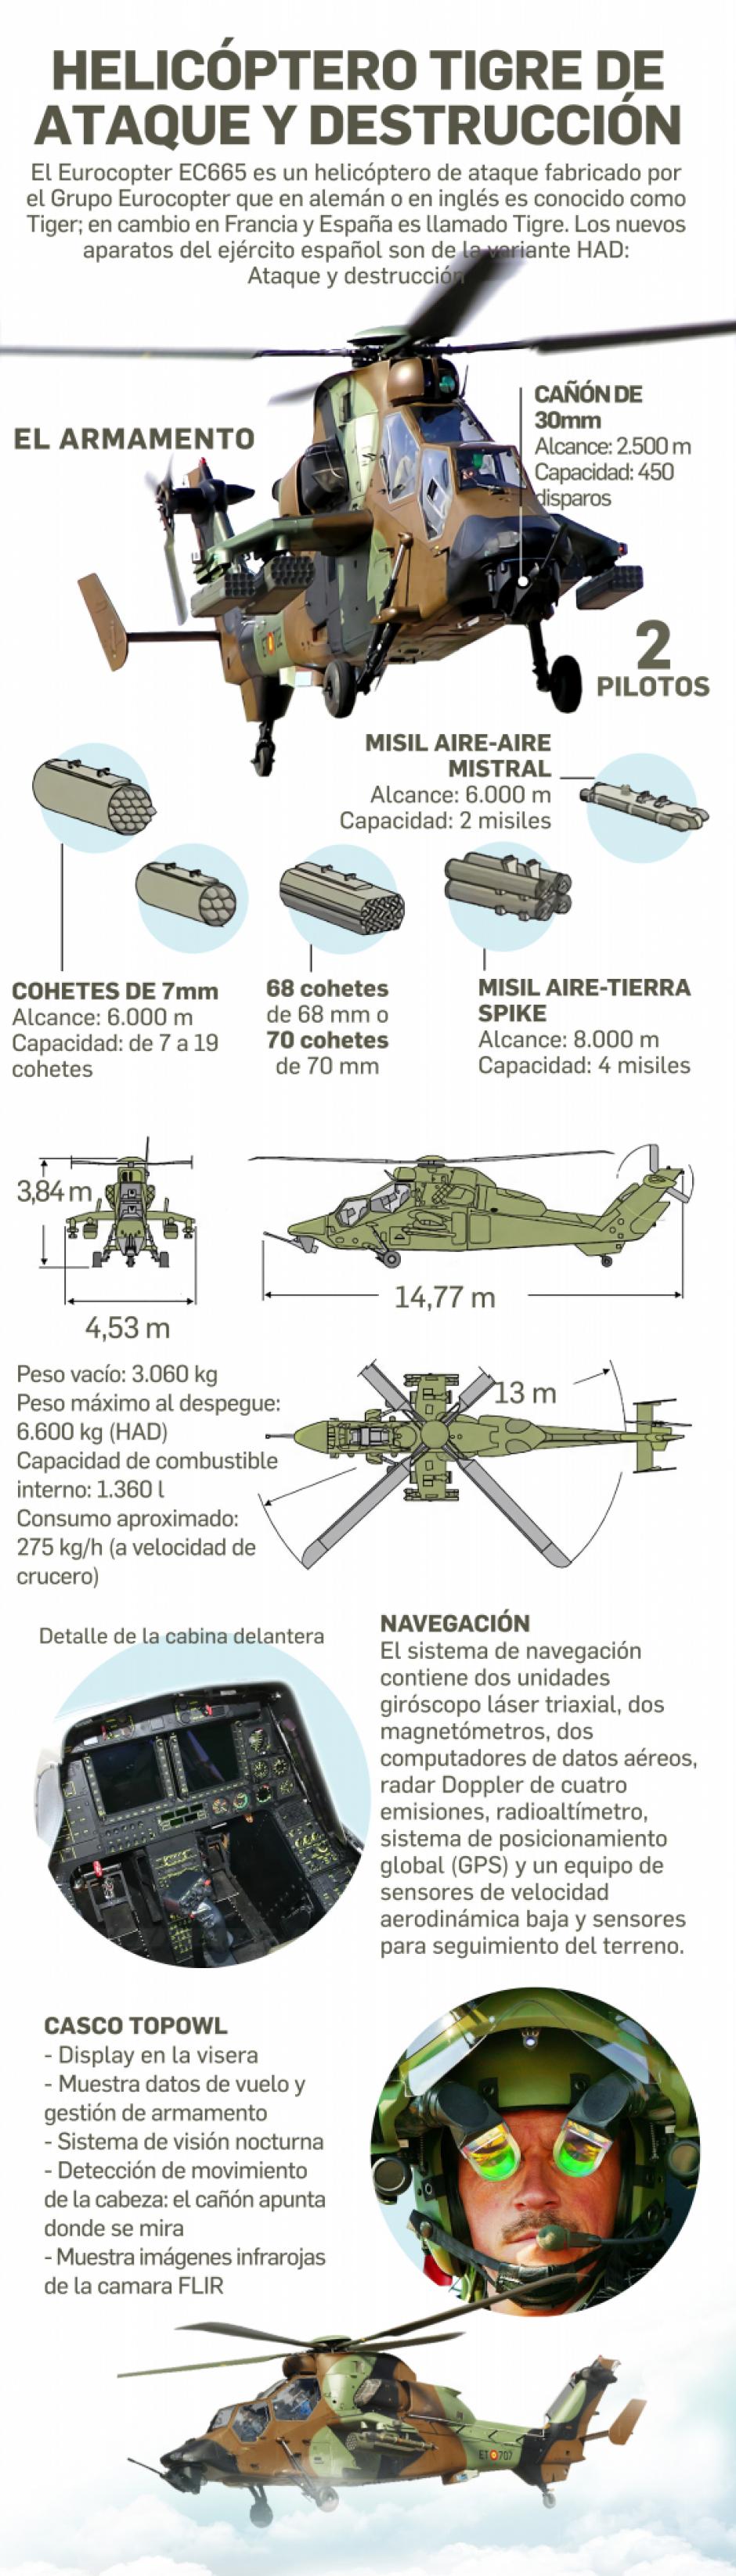 Infografía: Helicóptero Tigre